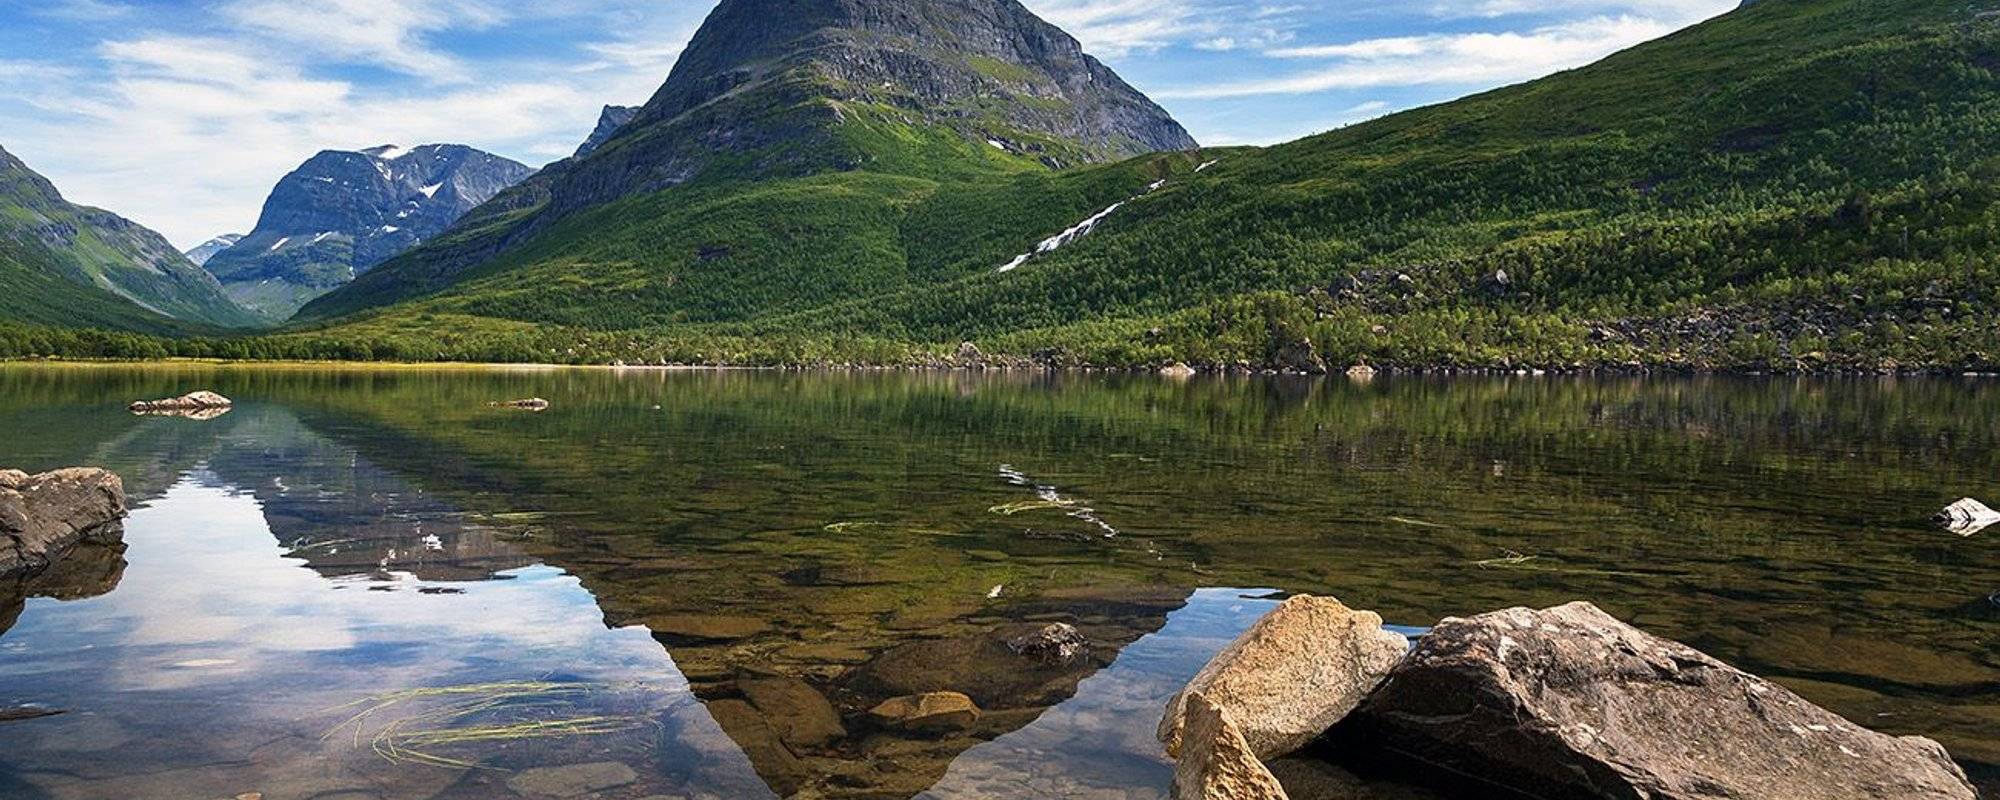 Travel Norway #10 - Innerdalen -First  Summer trip to Trollheimen National Park - Day 1